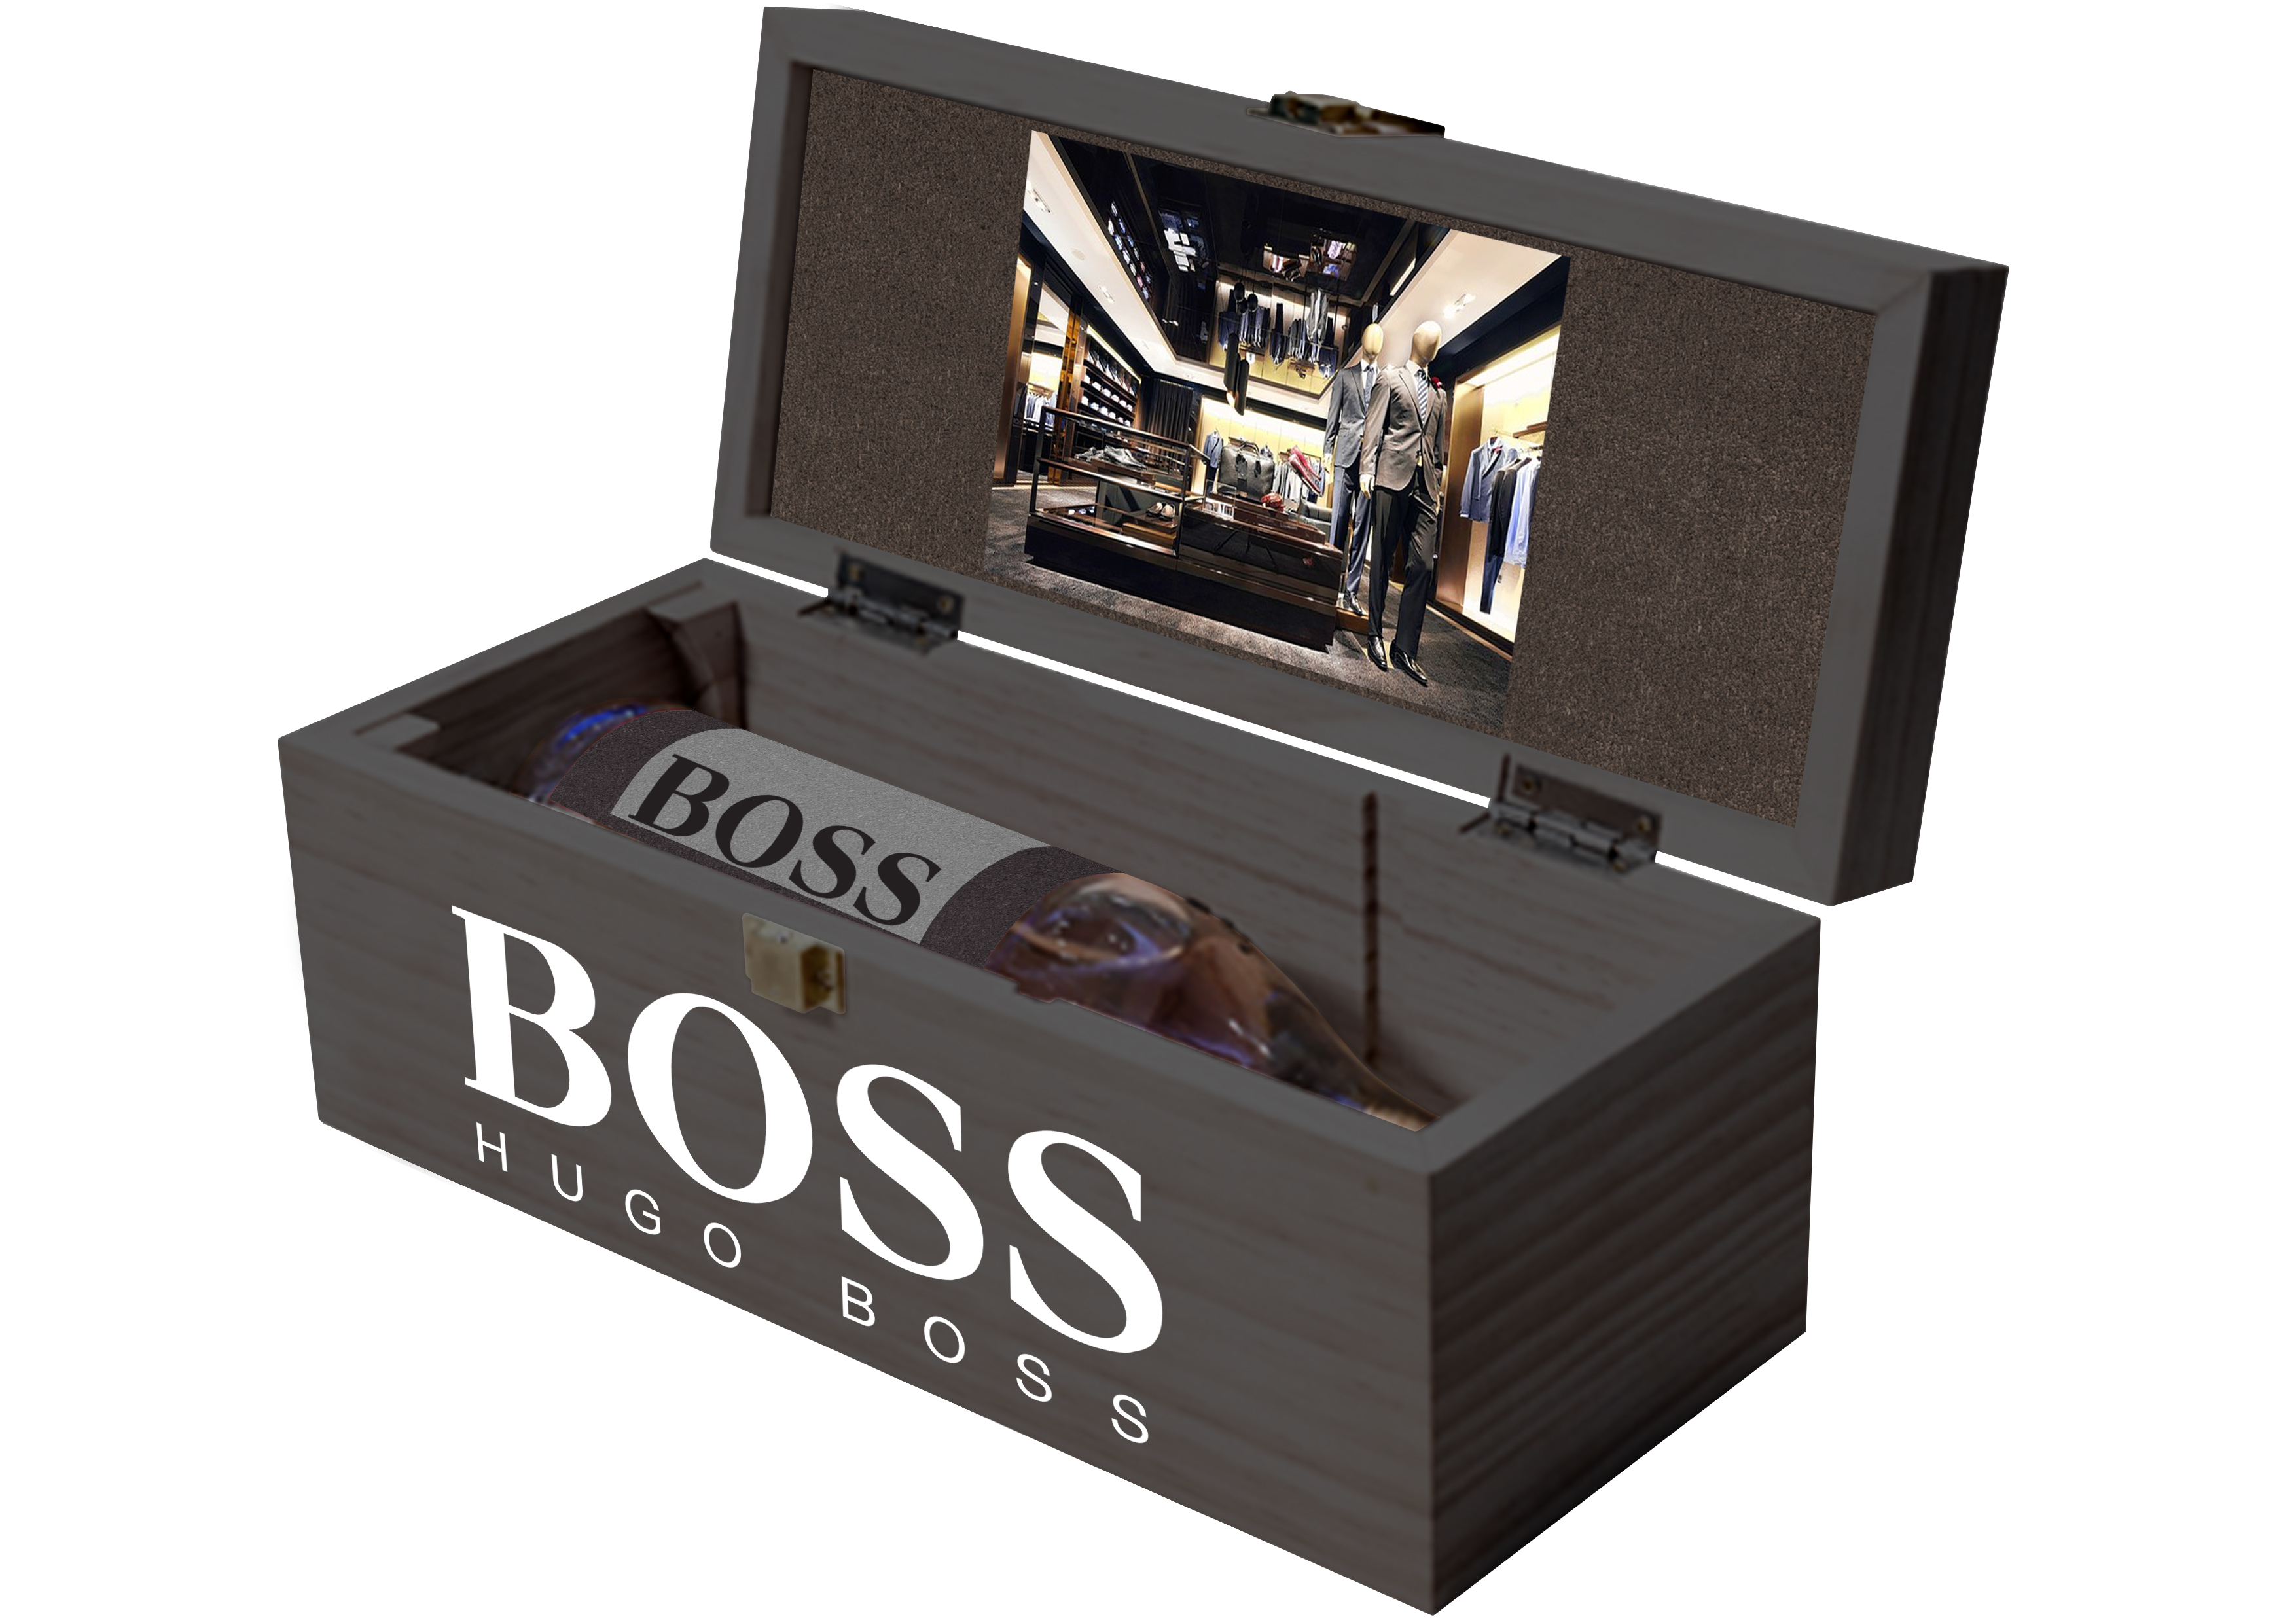 hugo boss box